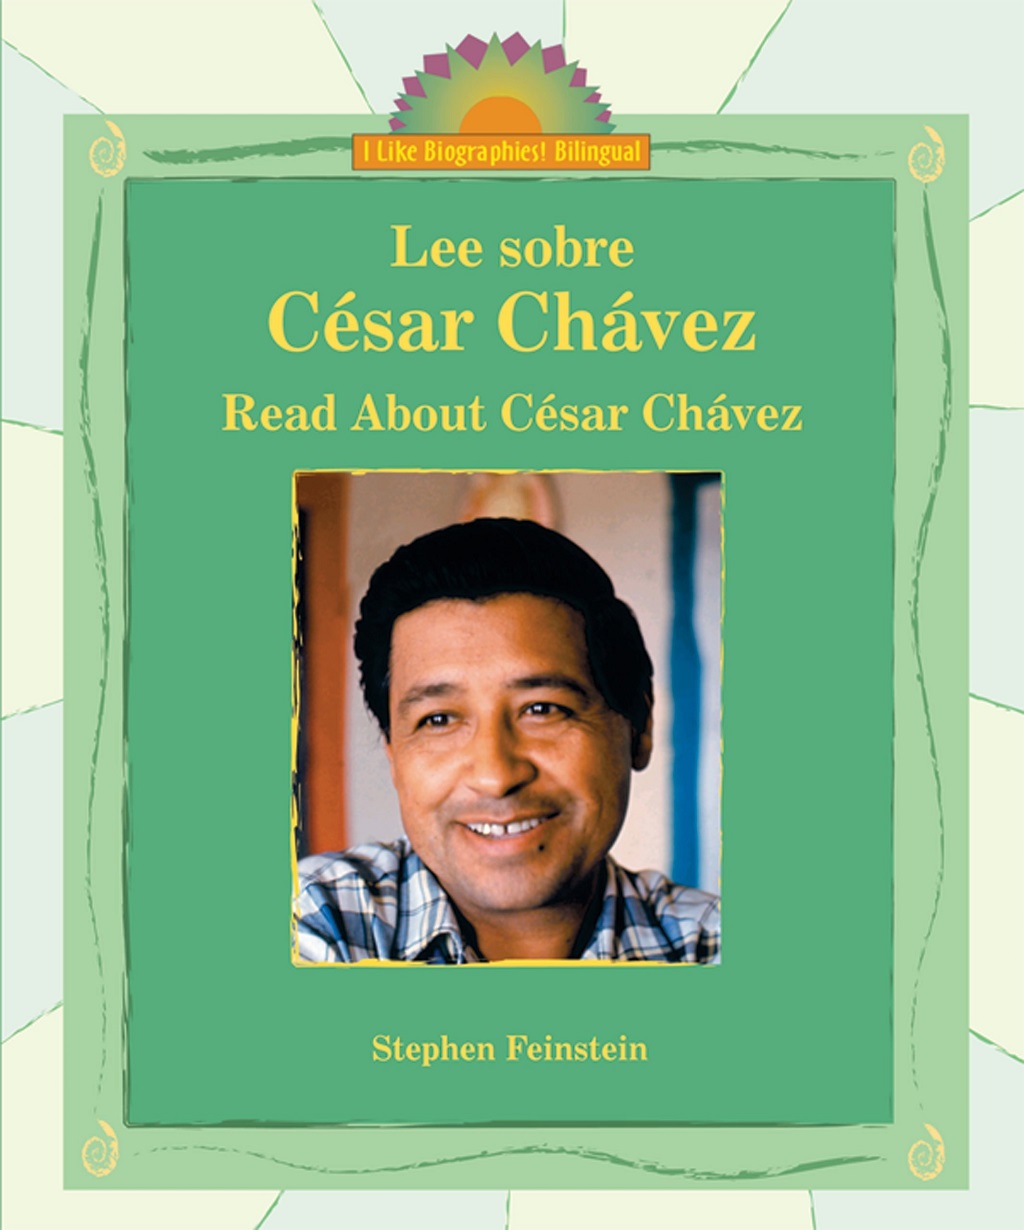 Libro: Lee sobre César Chávez por Stephen Feinstein